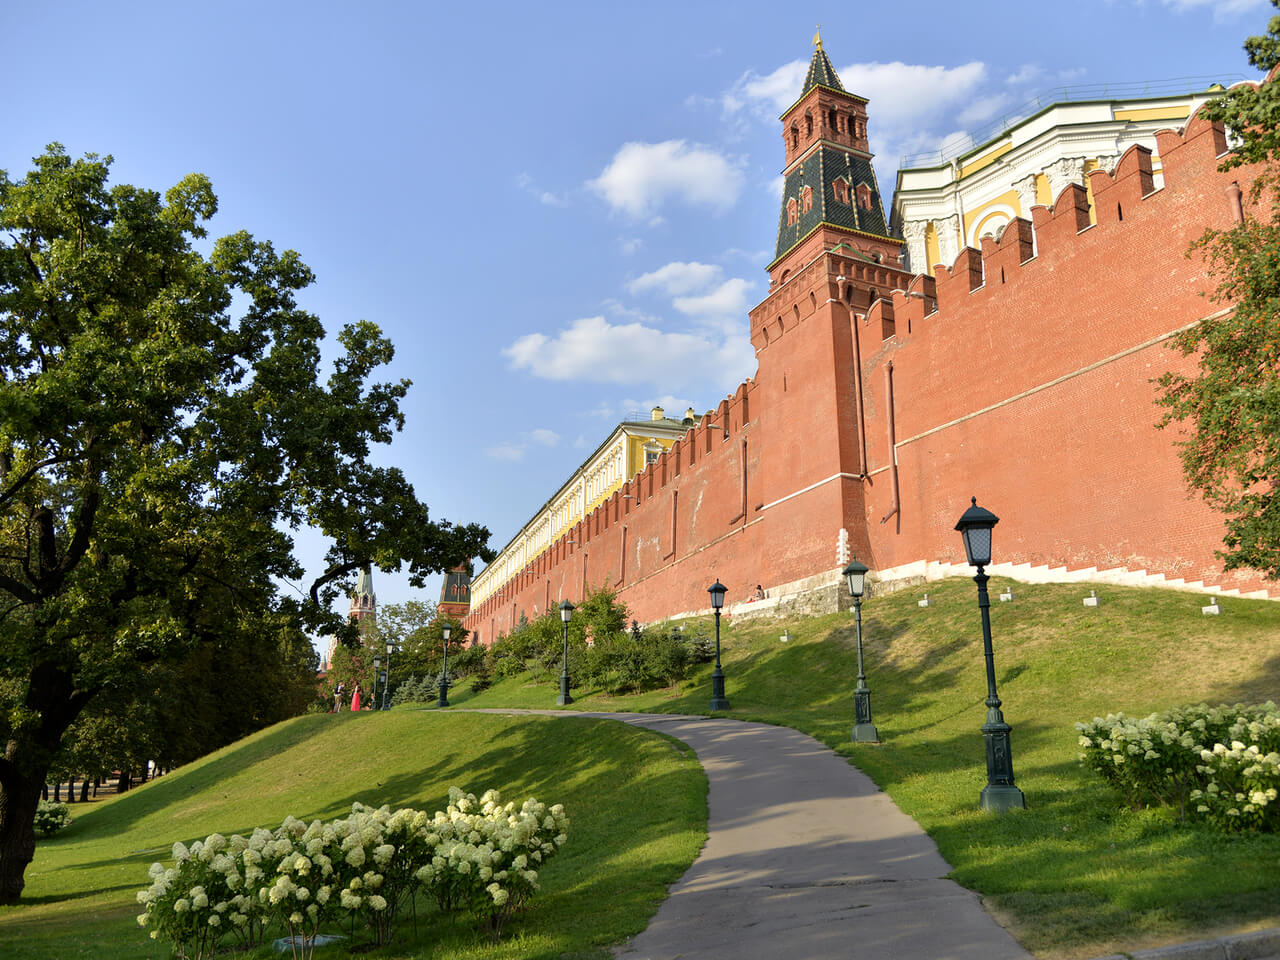 Kremlin towers